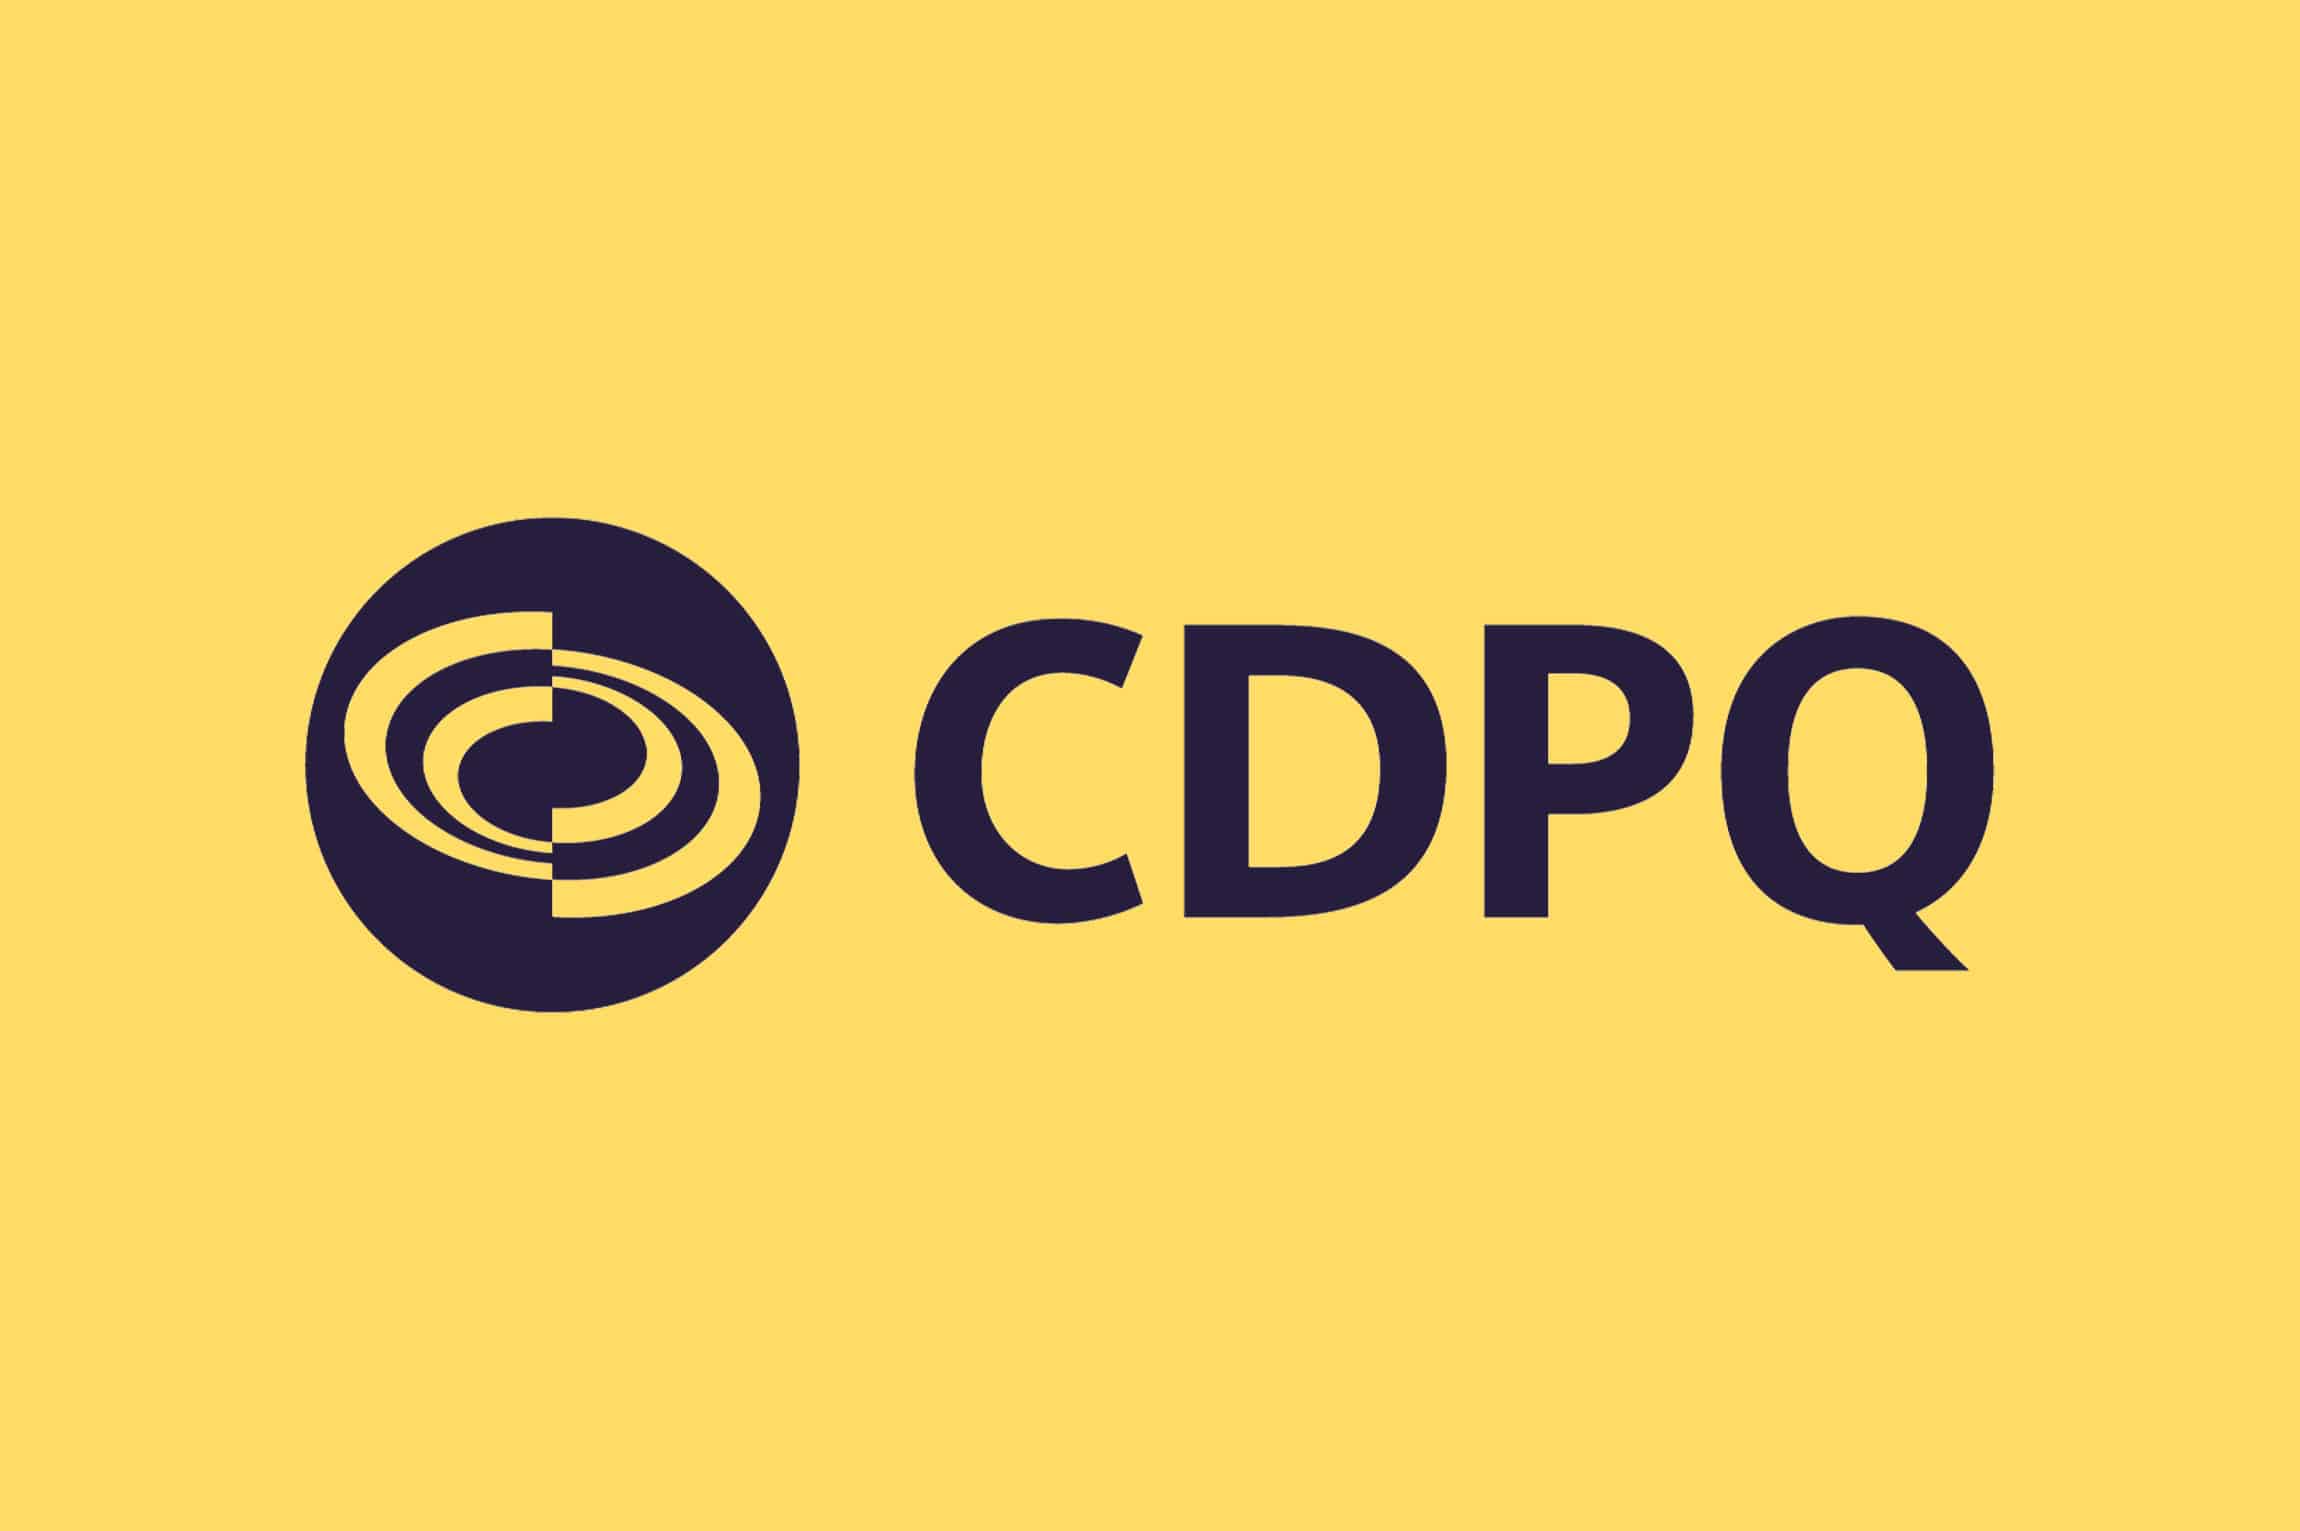 cdpq yellow